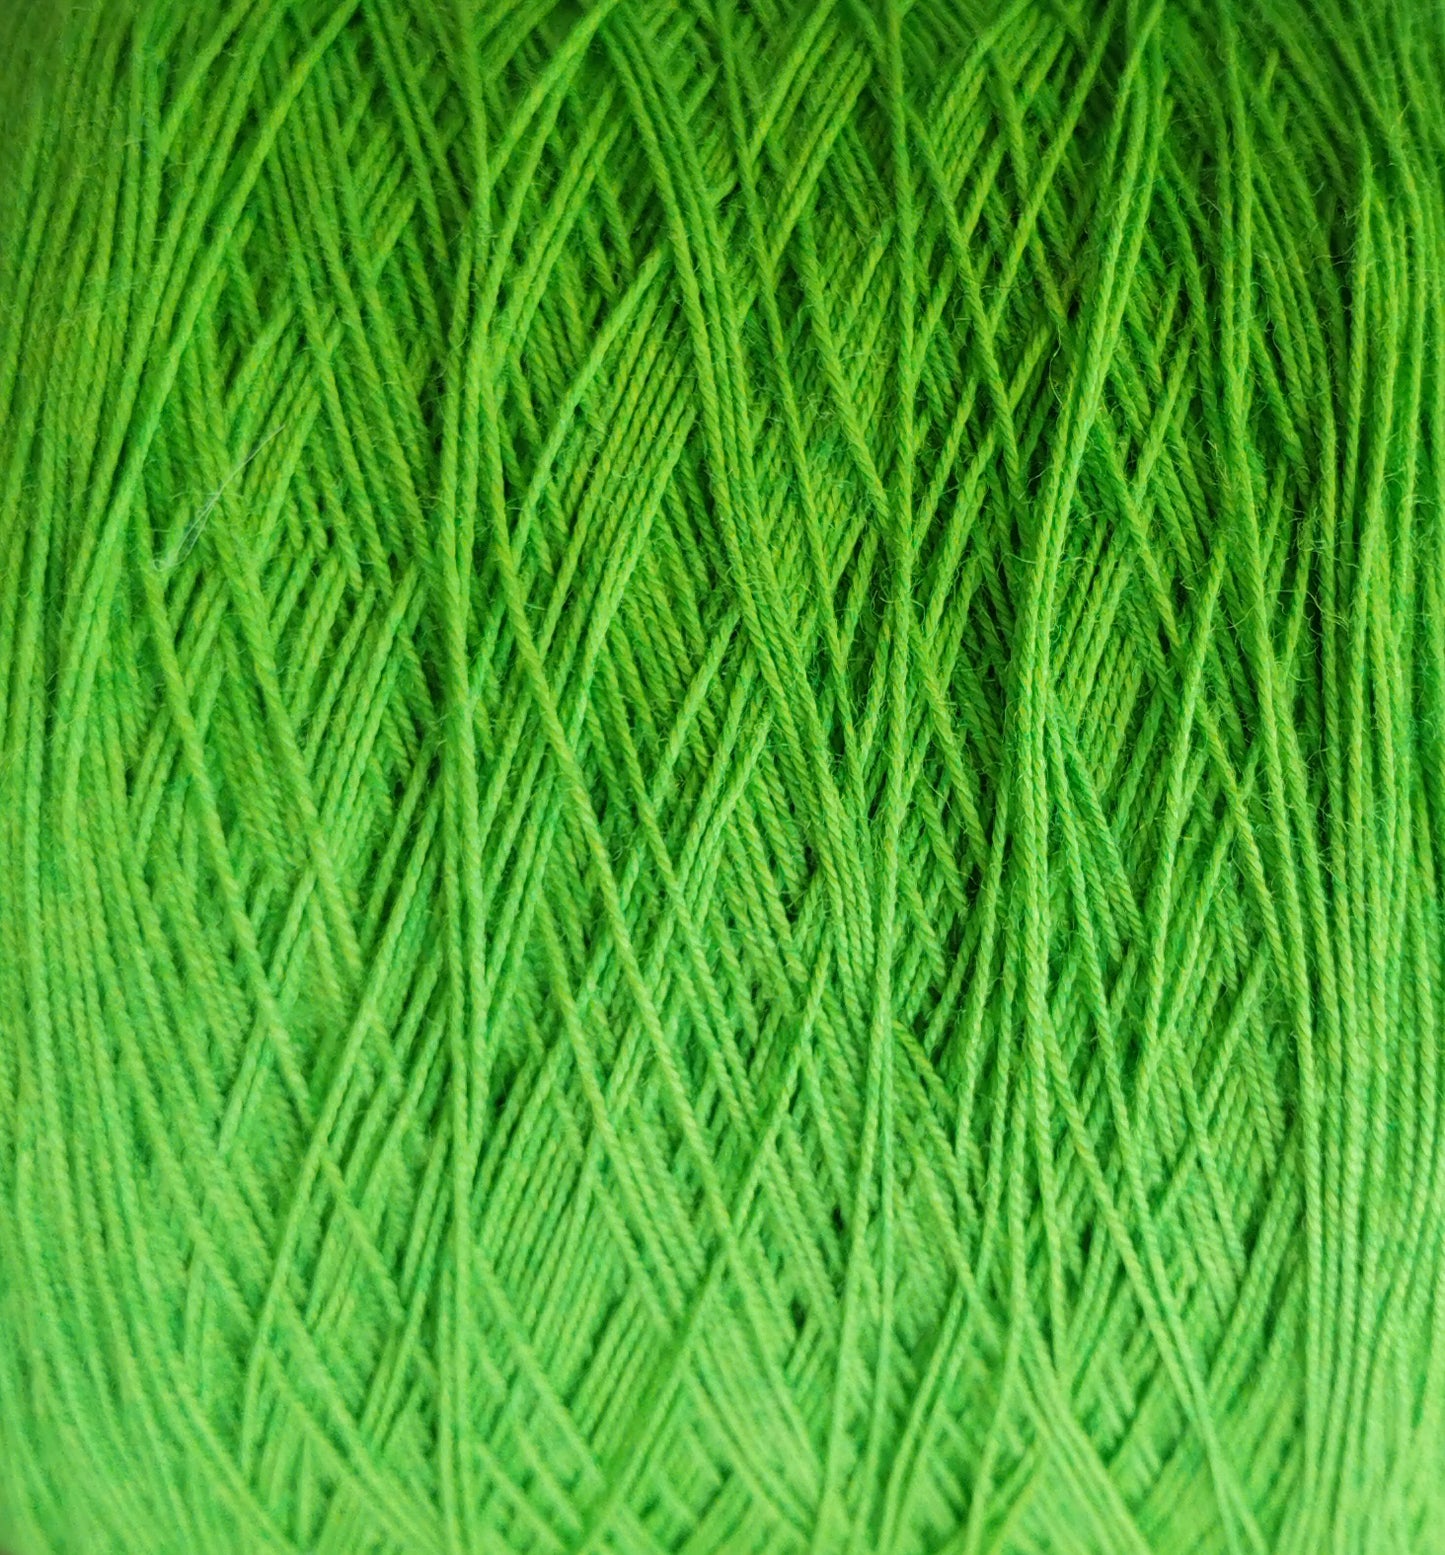 wool/nylon blend yarn in neon green